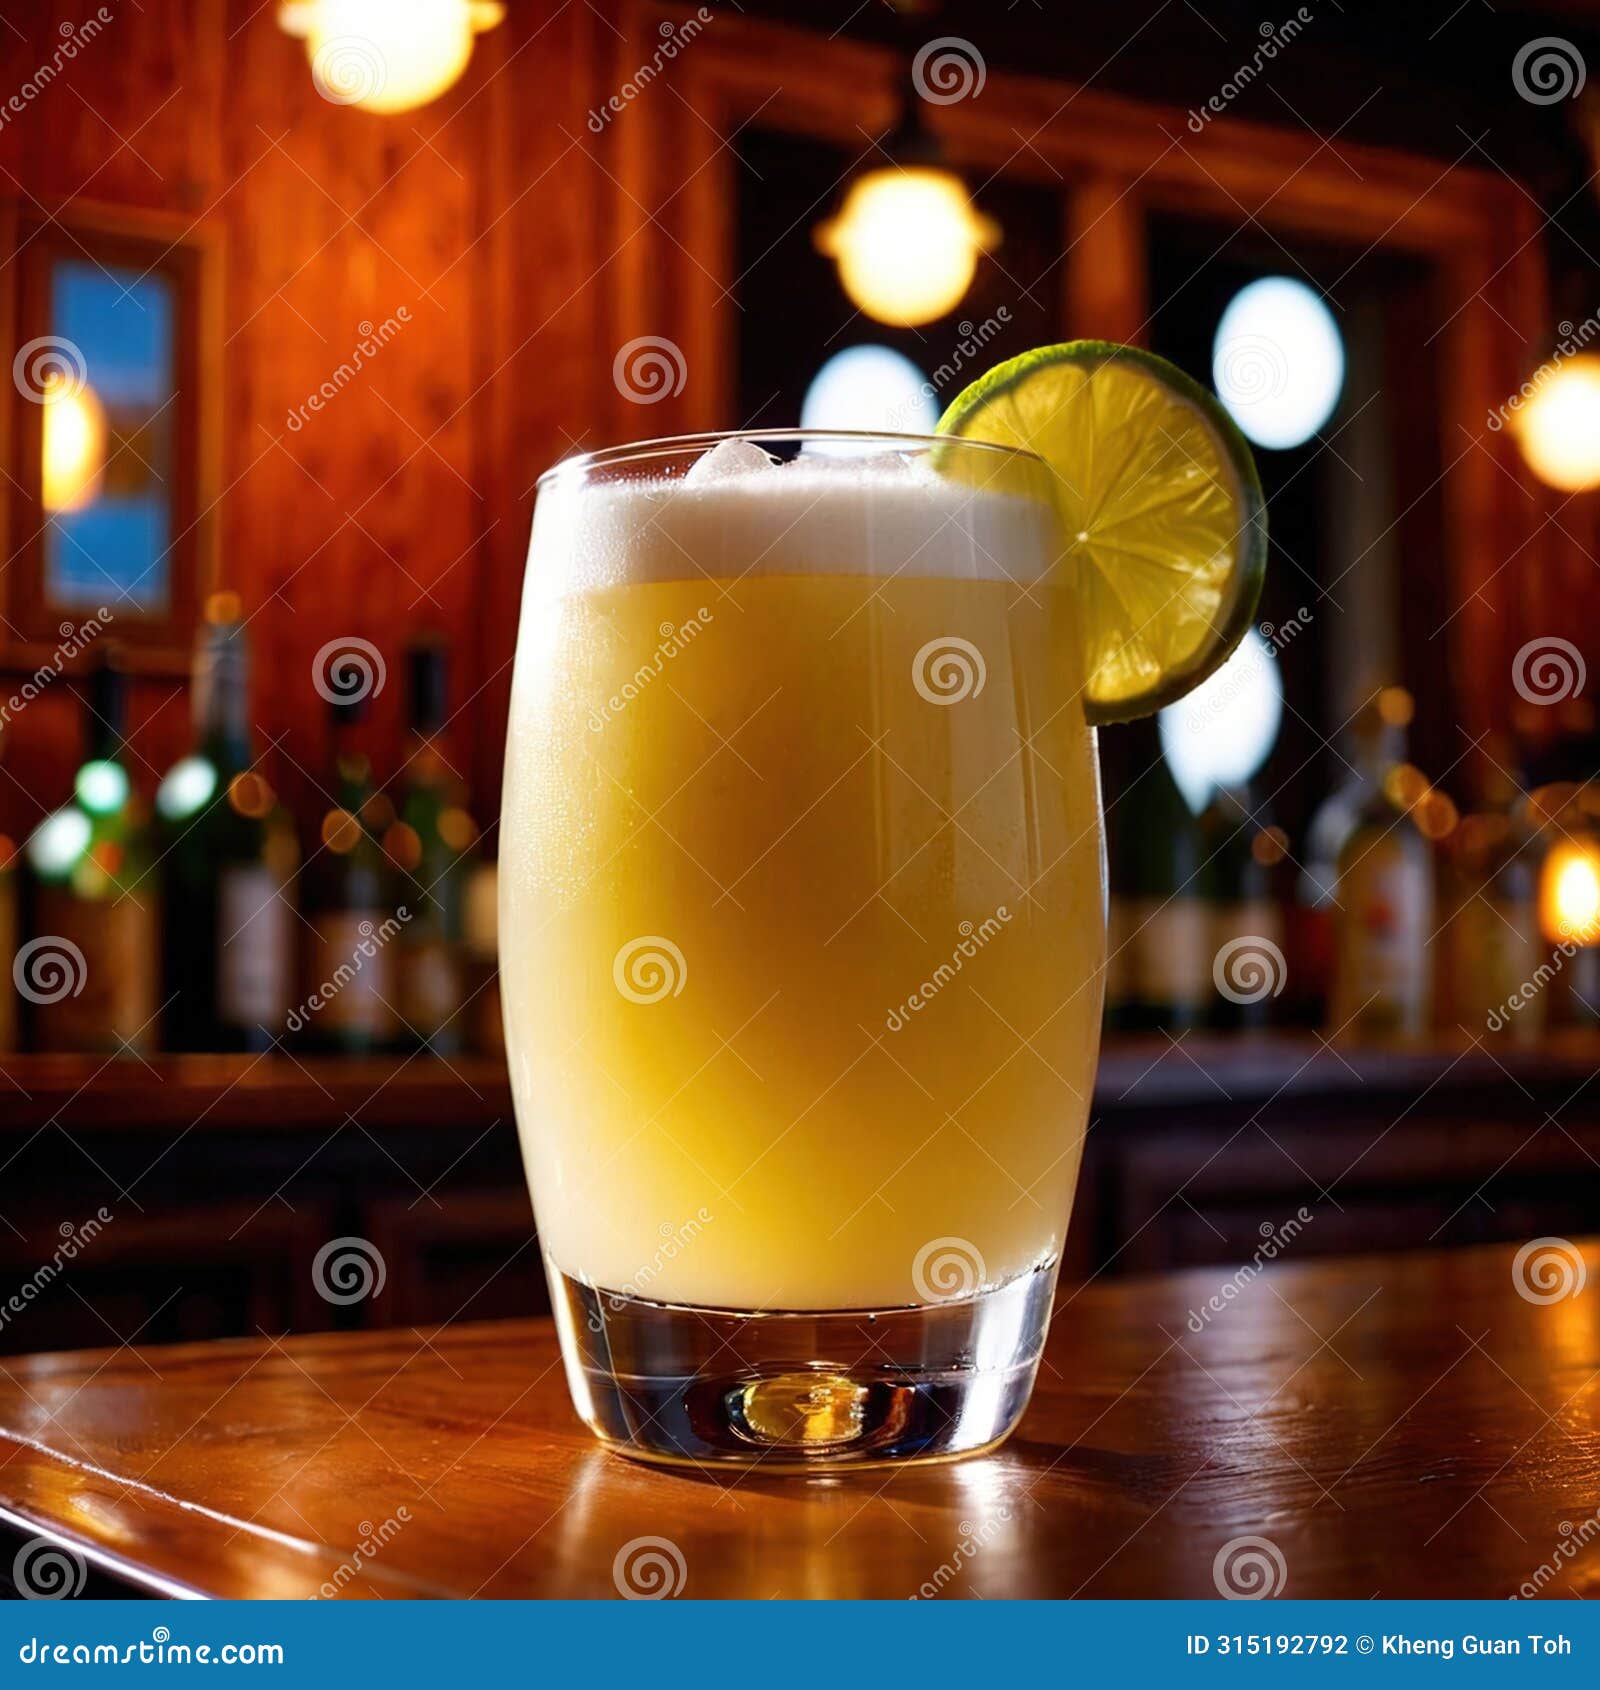 pisco sour, citrus lemon cocktail liquer alcoholic liquor mixed drink in bar pub